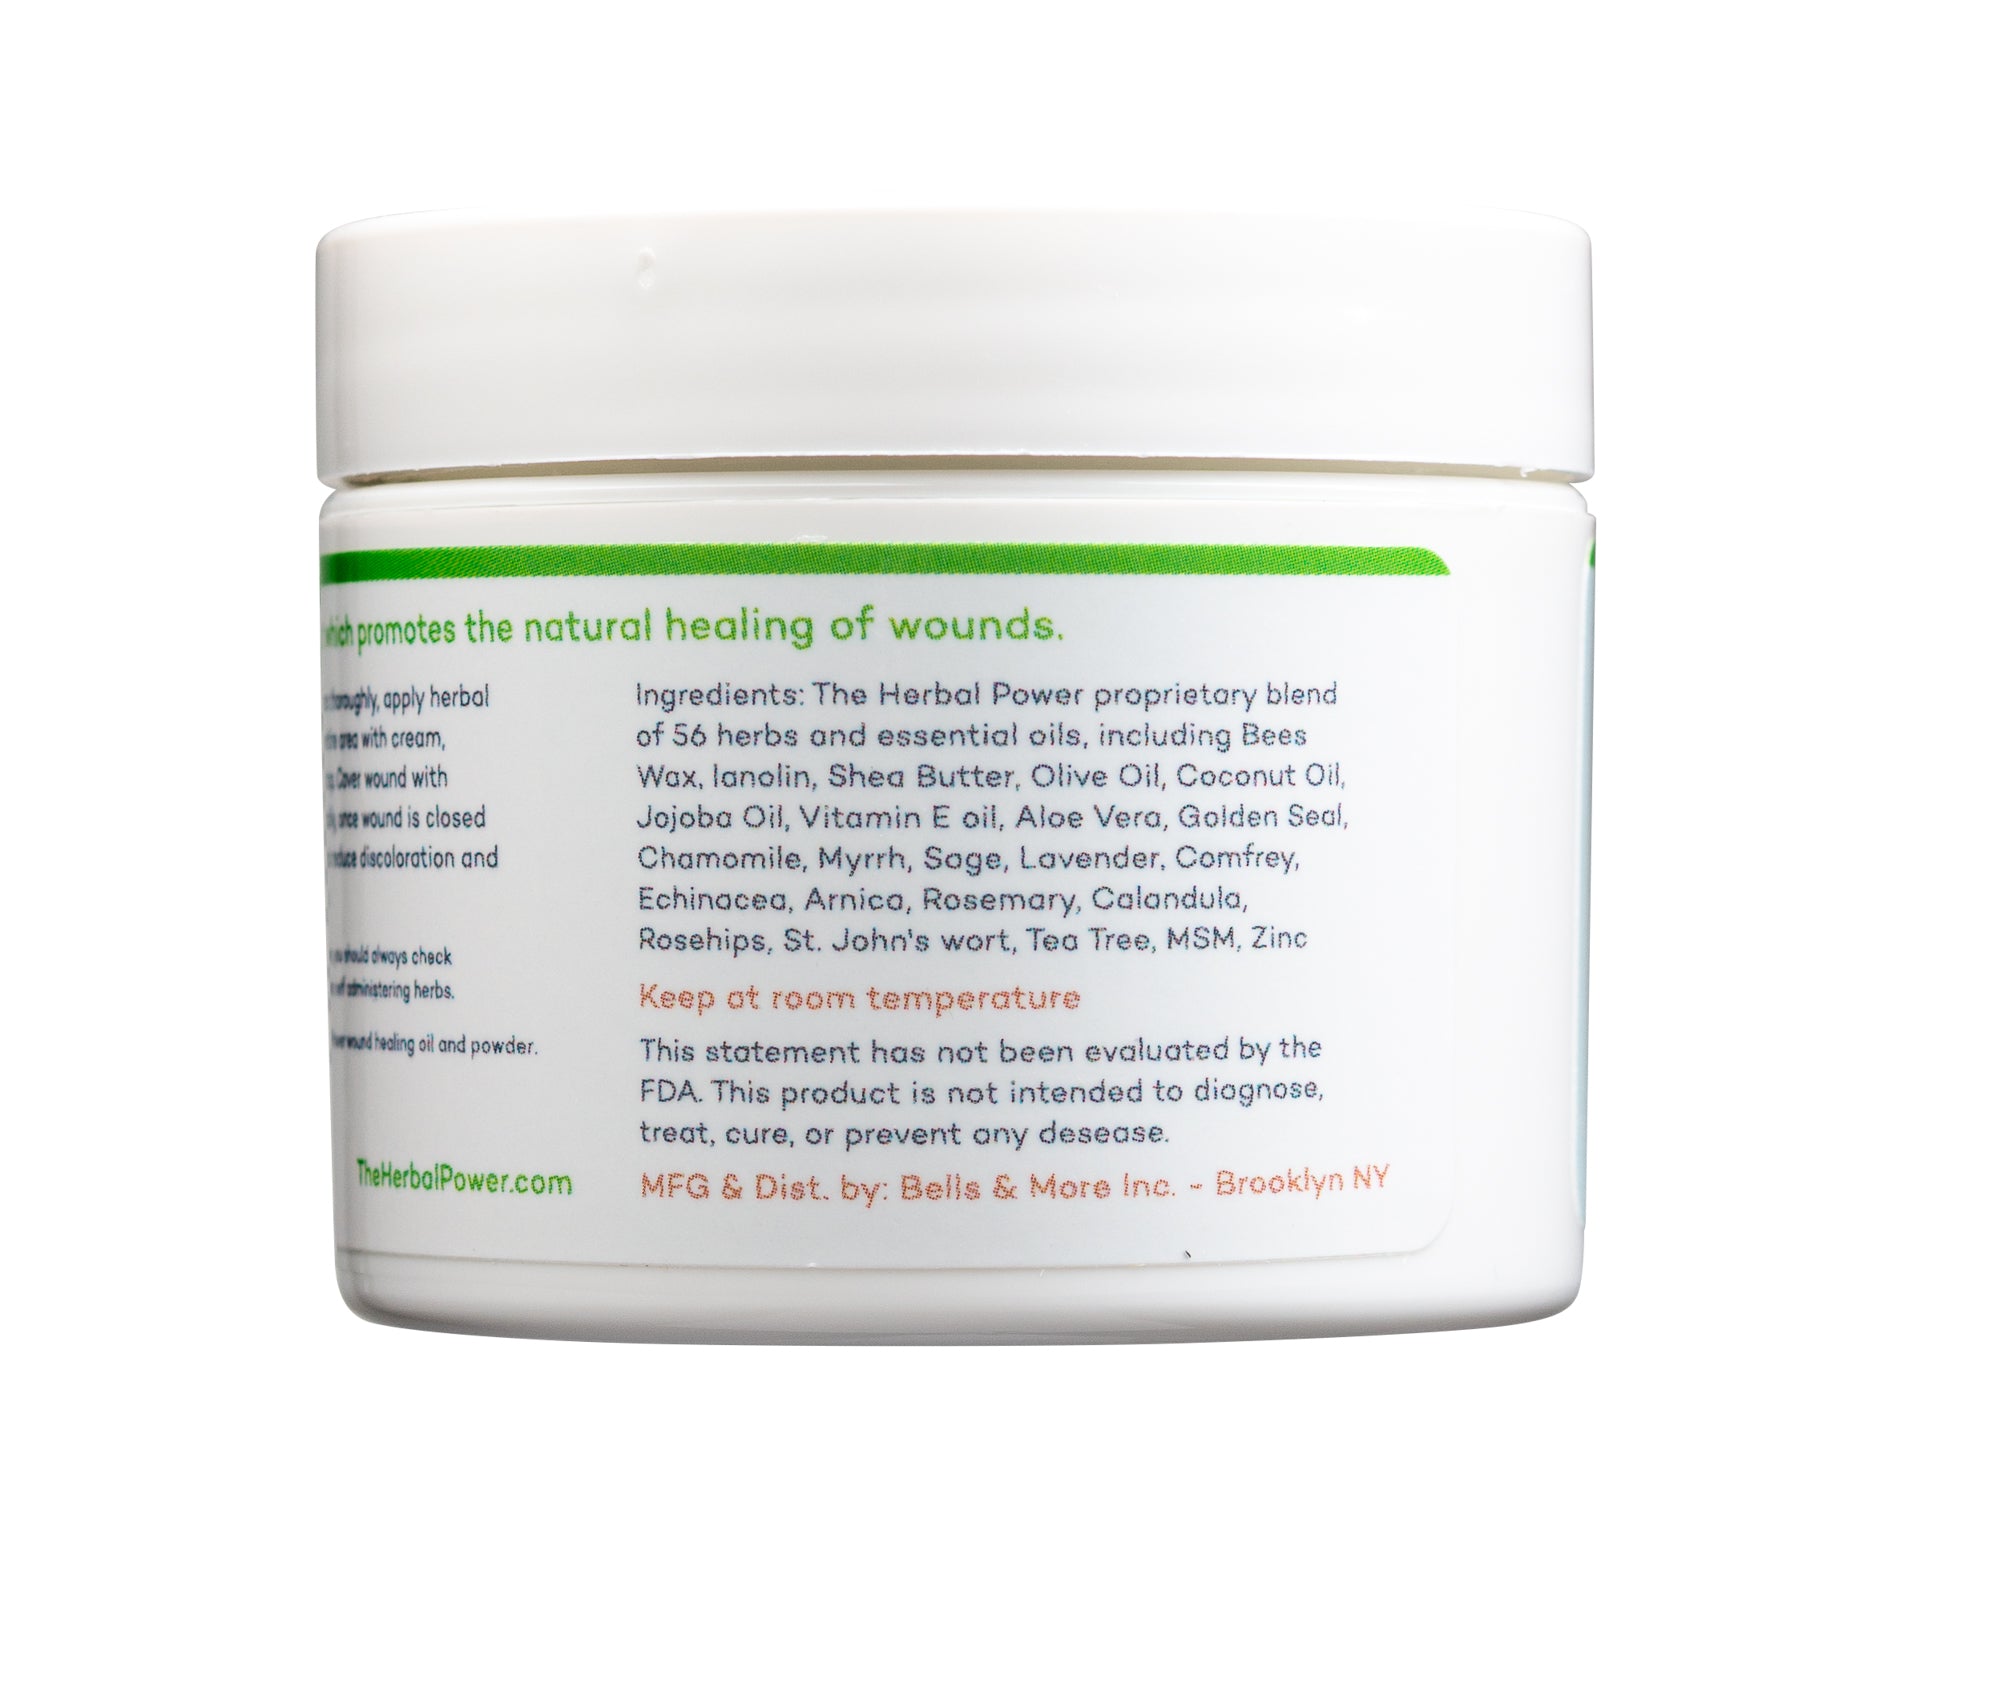 HerbalPower Amazing Wound Healing Cream